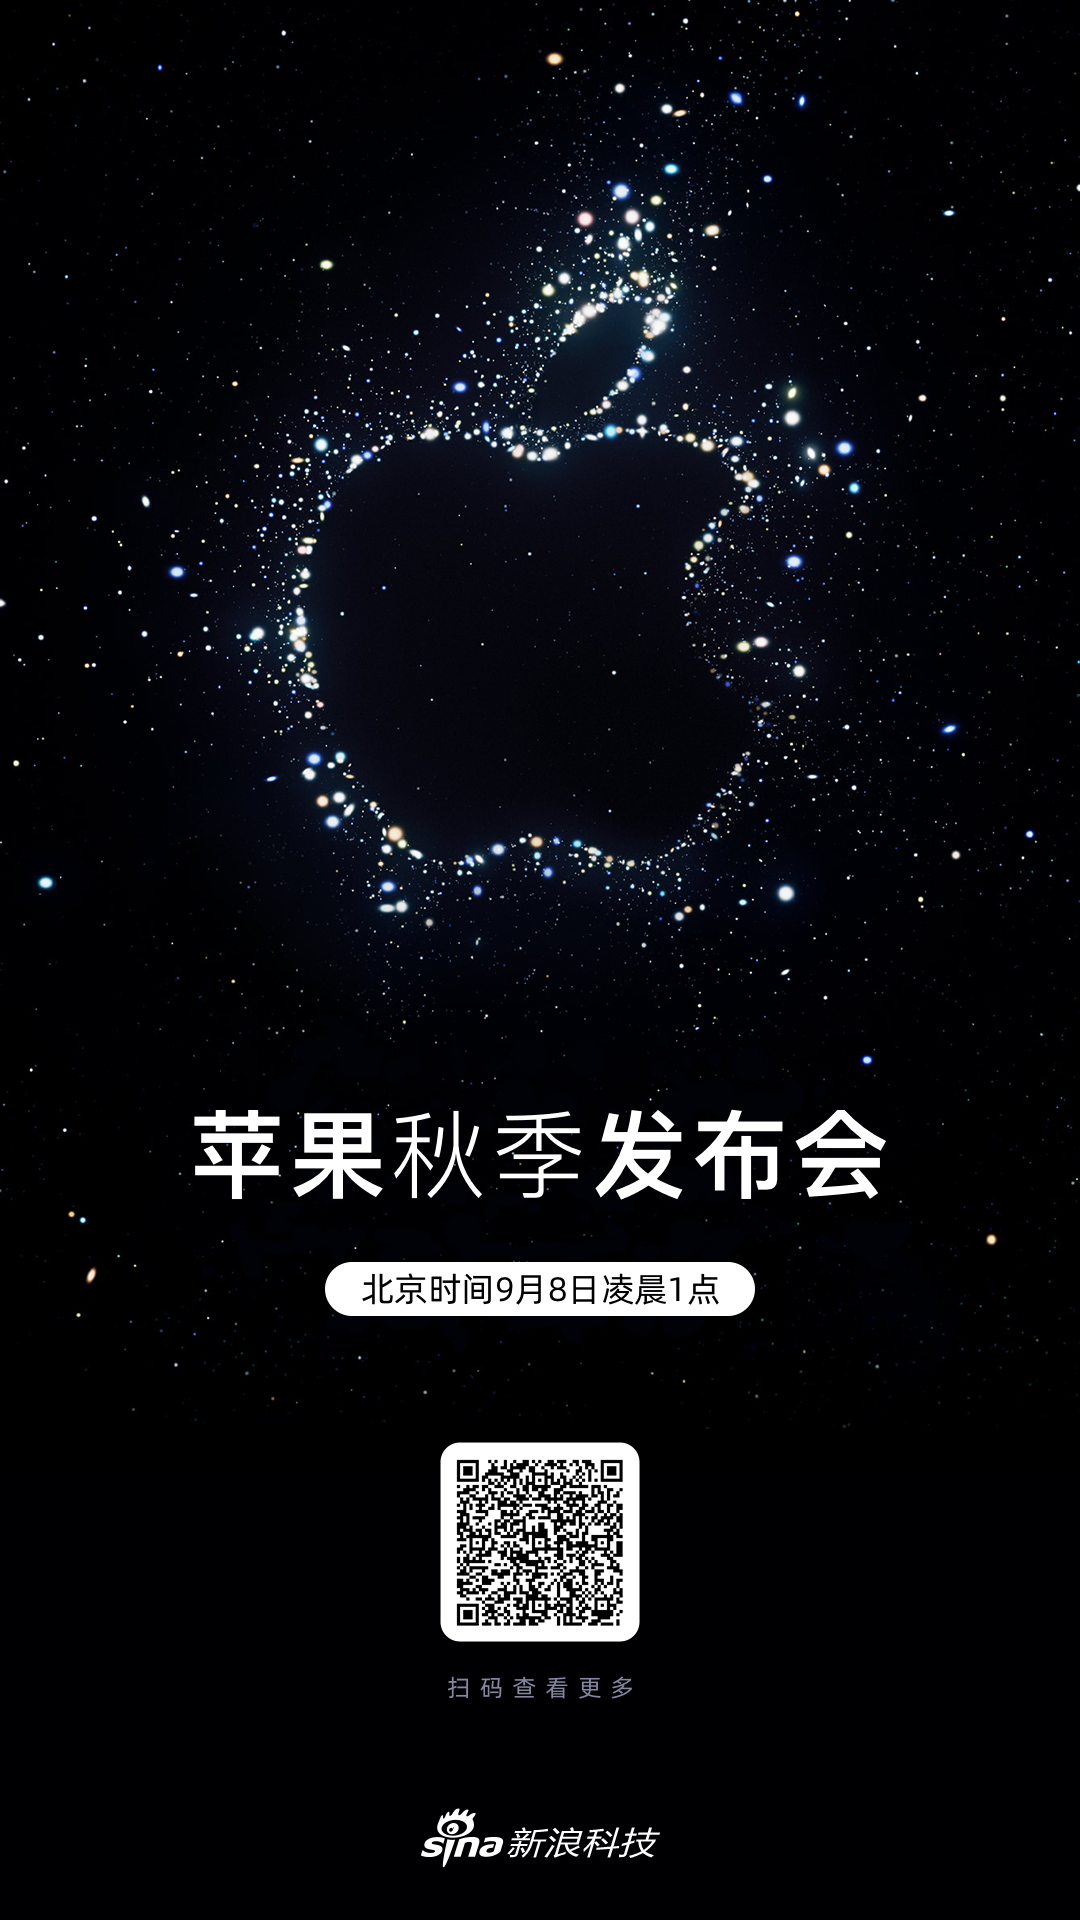 苹果发布虚假广告被北京市场监管部门行政处罚20万 - 果核剥壳